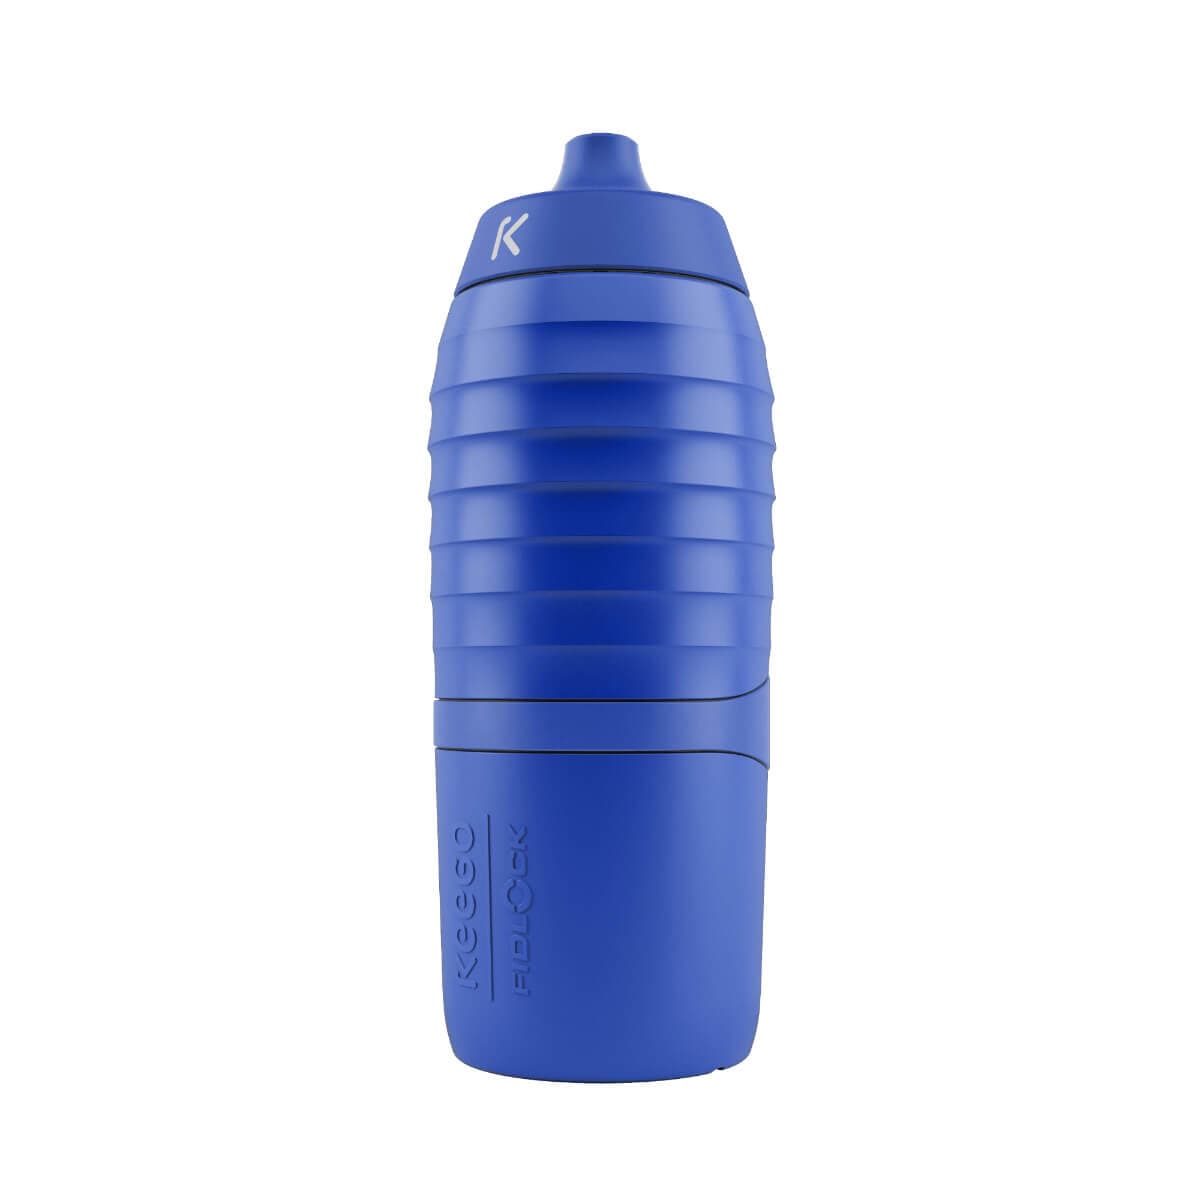 The blue bike bottle TWIST x KEEGO 0.6L upright